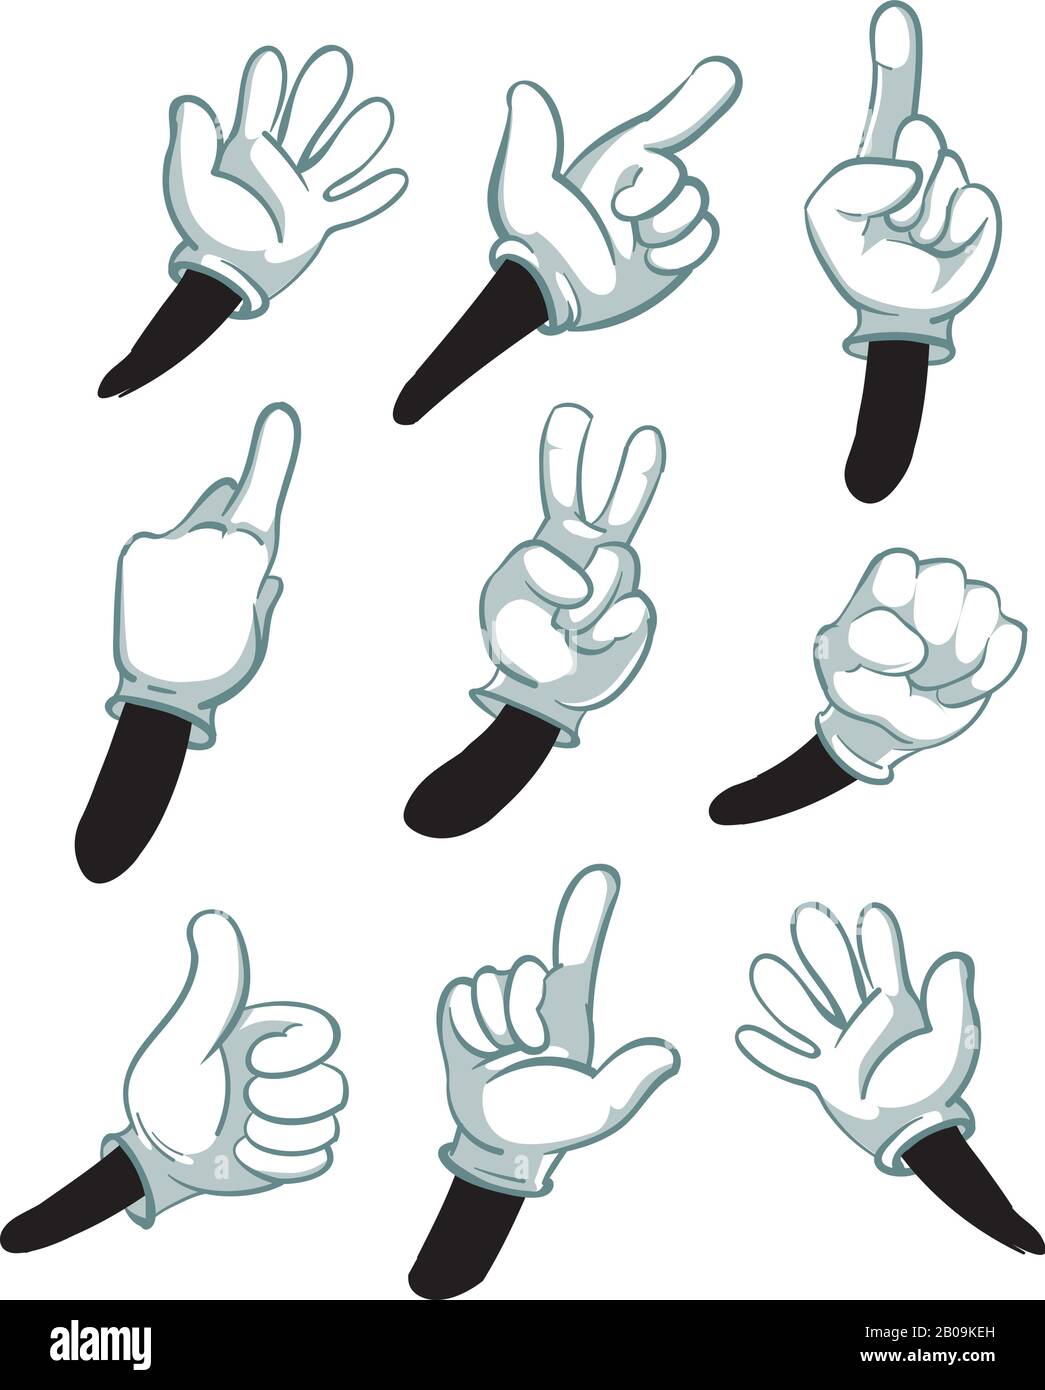 Bracci di cartone animato, mani gloved. Parti di illustrazione del vettore di corpo. Indossate guanti bianchi, insieme di gesti delle mani Illustrazione Vettoriale